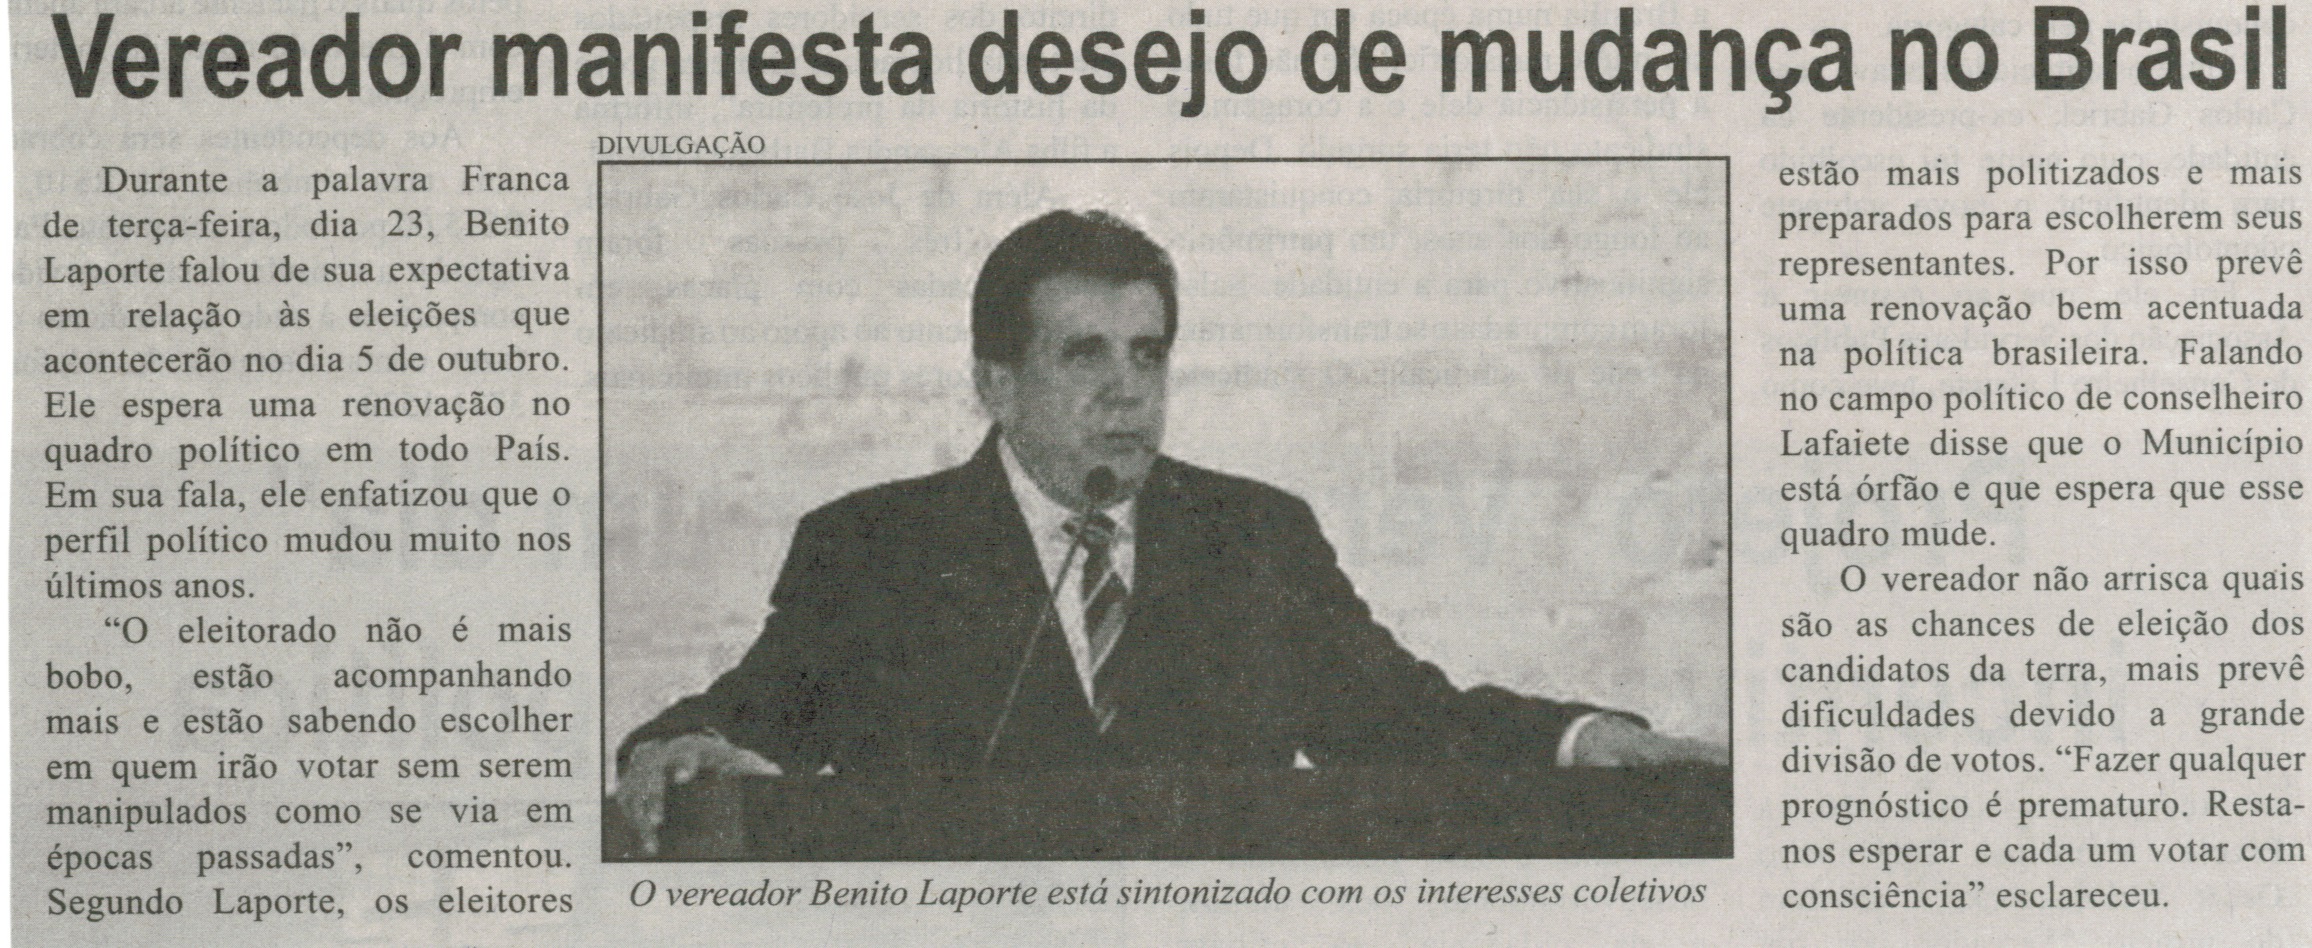 Vereador manifesta desejo de mudança no Brasil. Correio de Minas, Conselheiro Lafaiete, 27 set. 2014, p. 3.